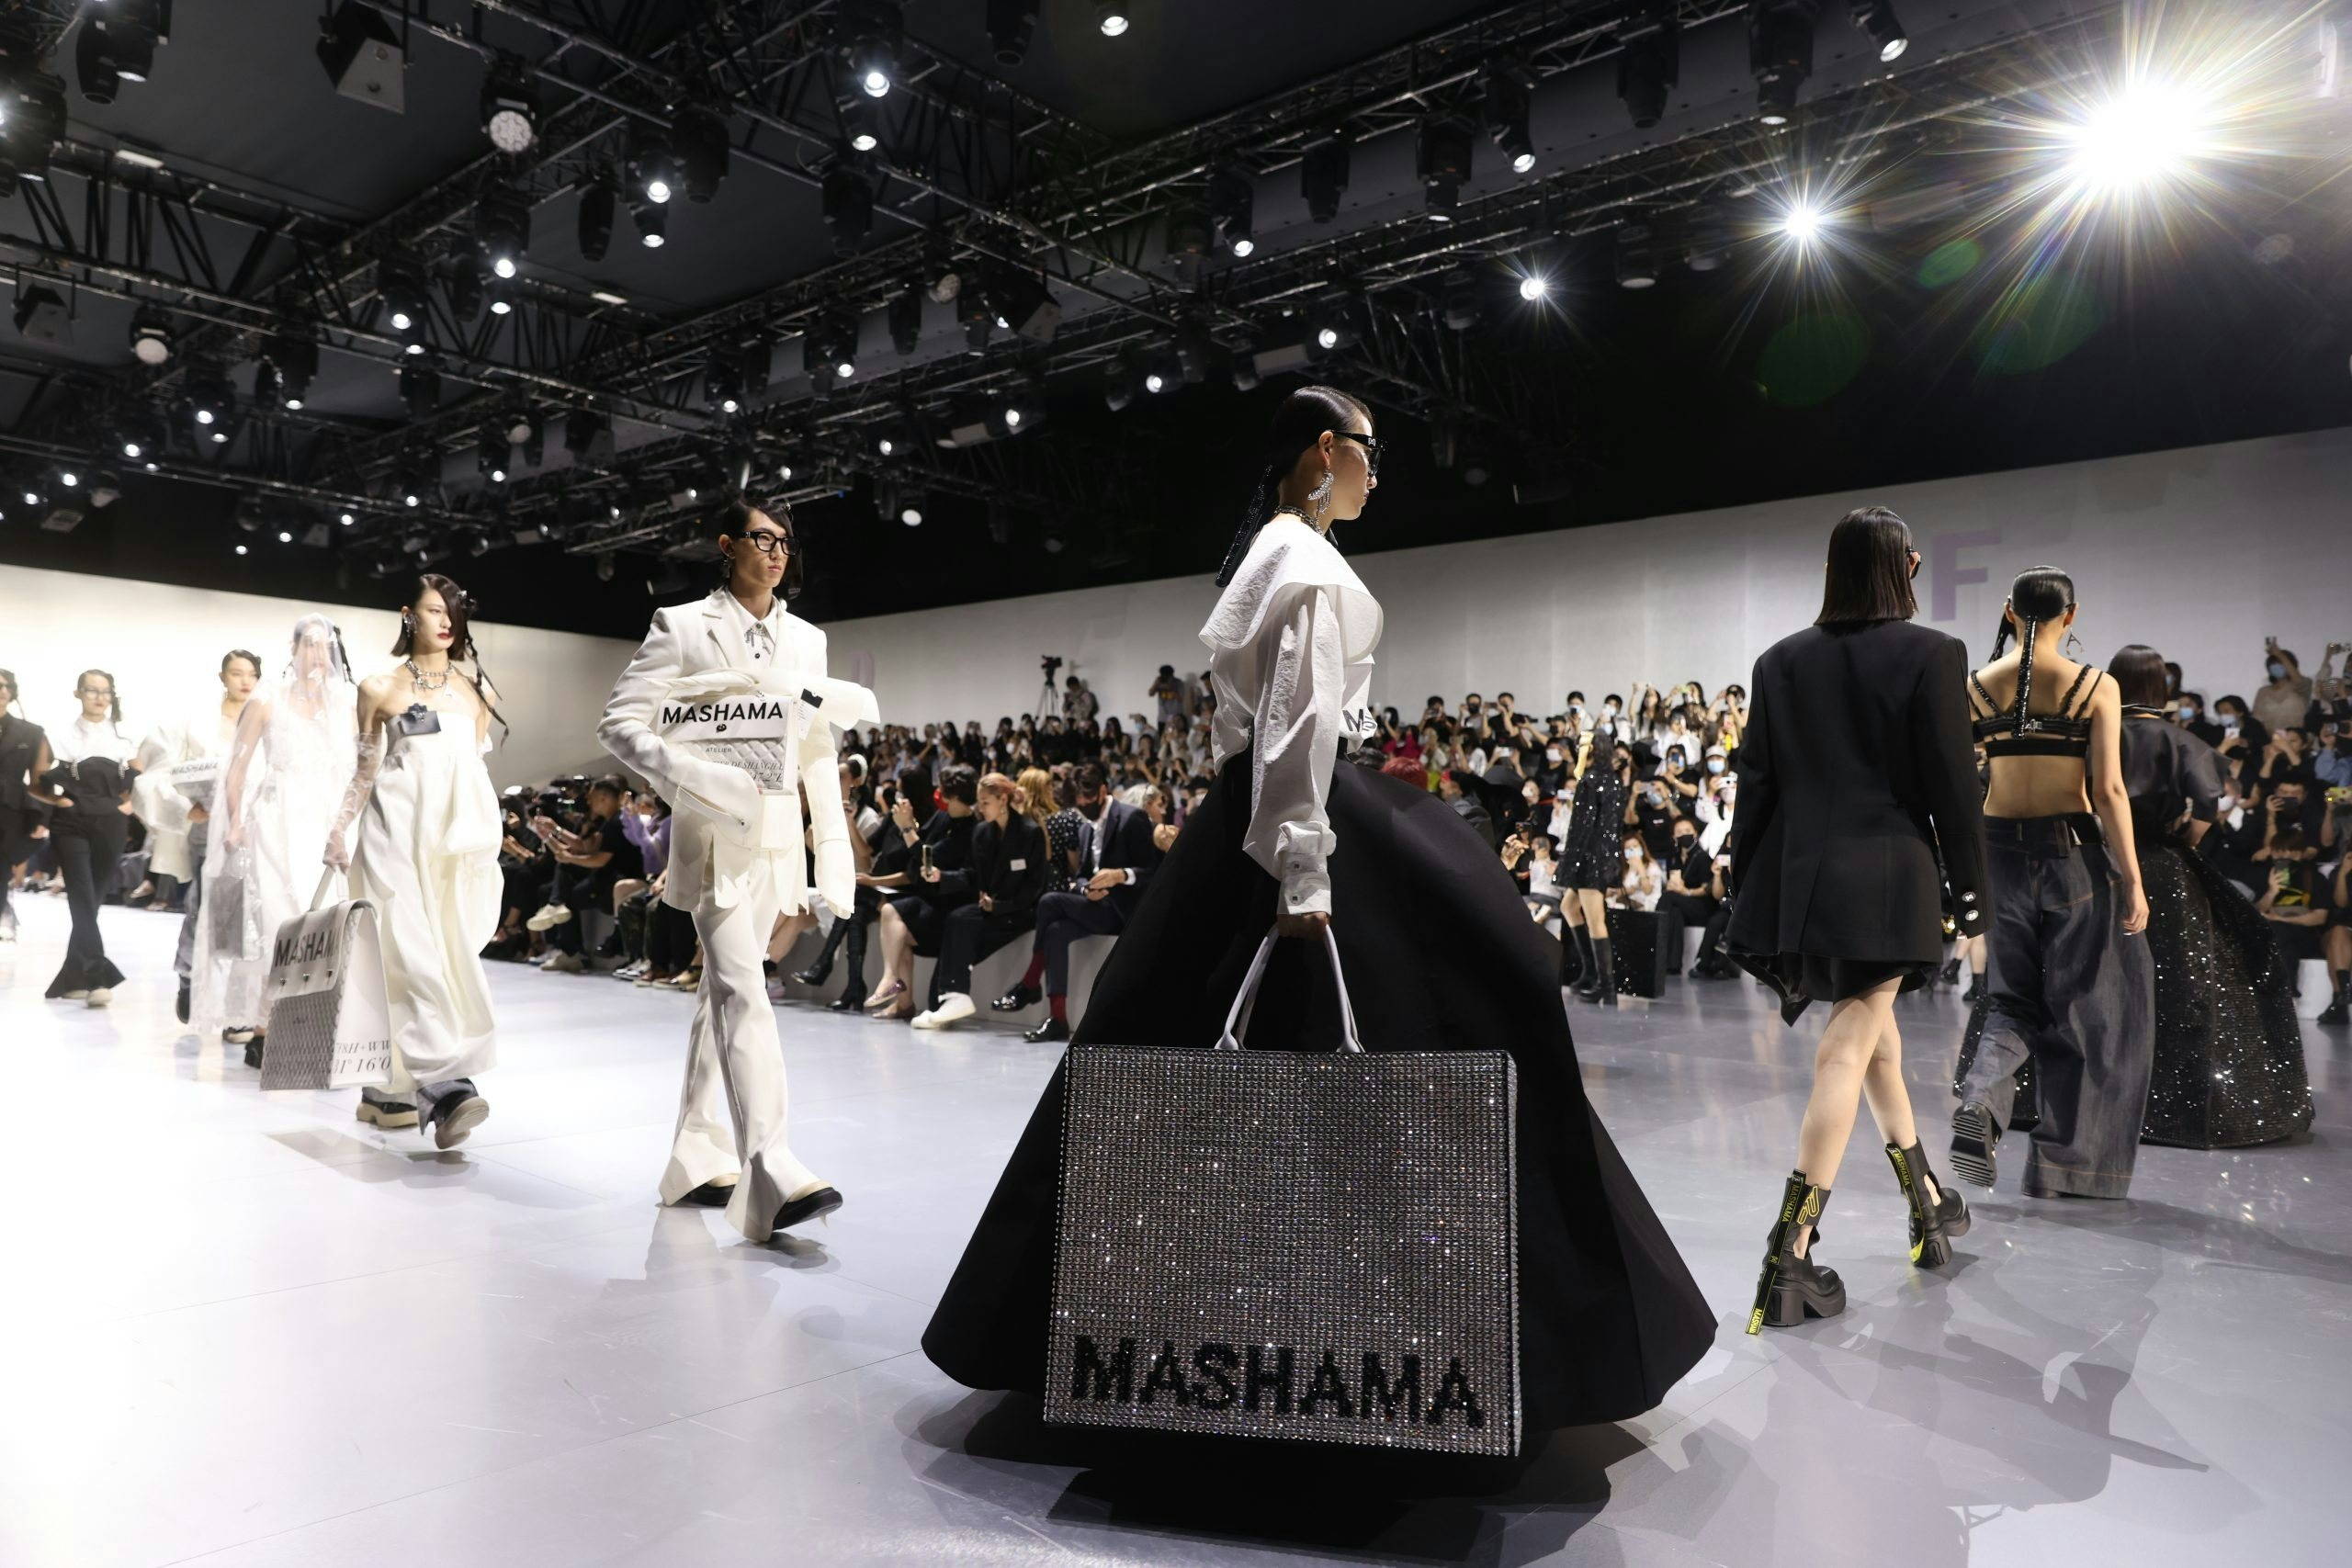 MASHAMA Spring 2022 opened Shanghai Fashion Week.